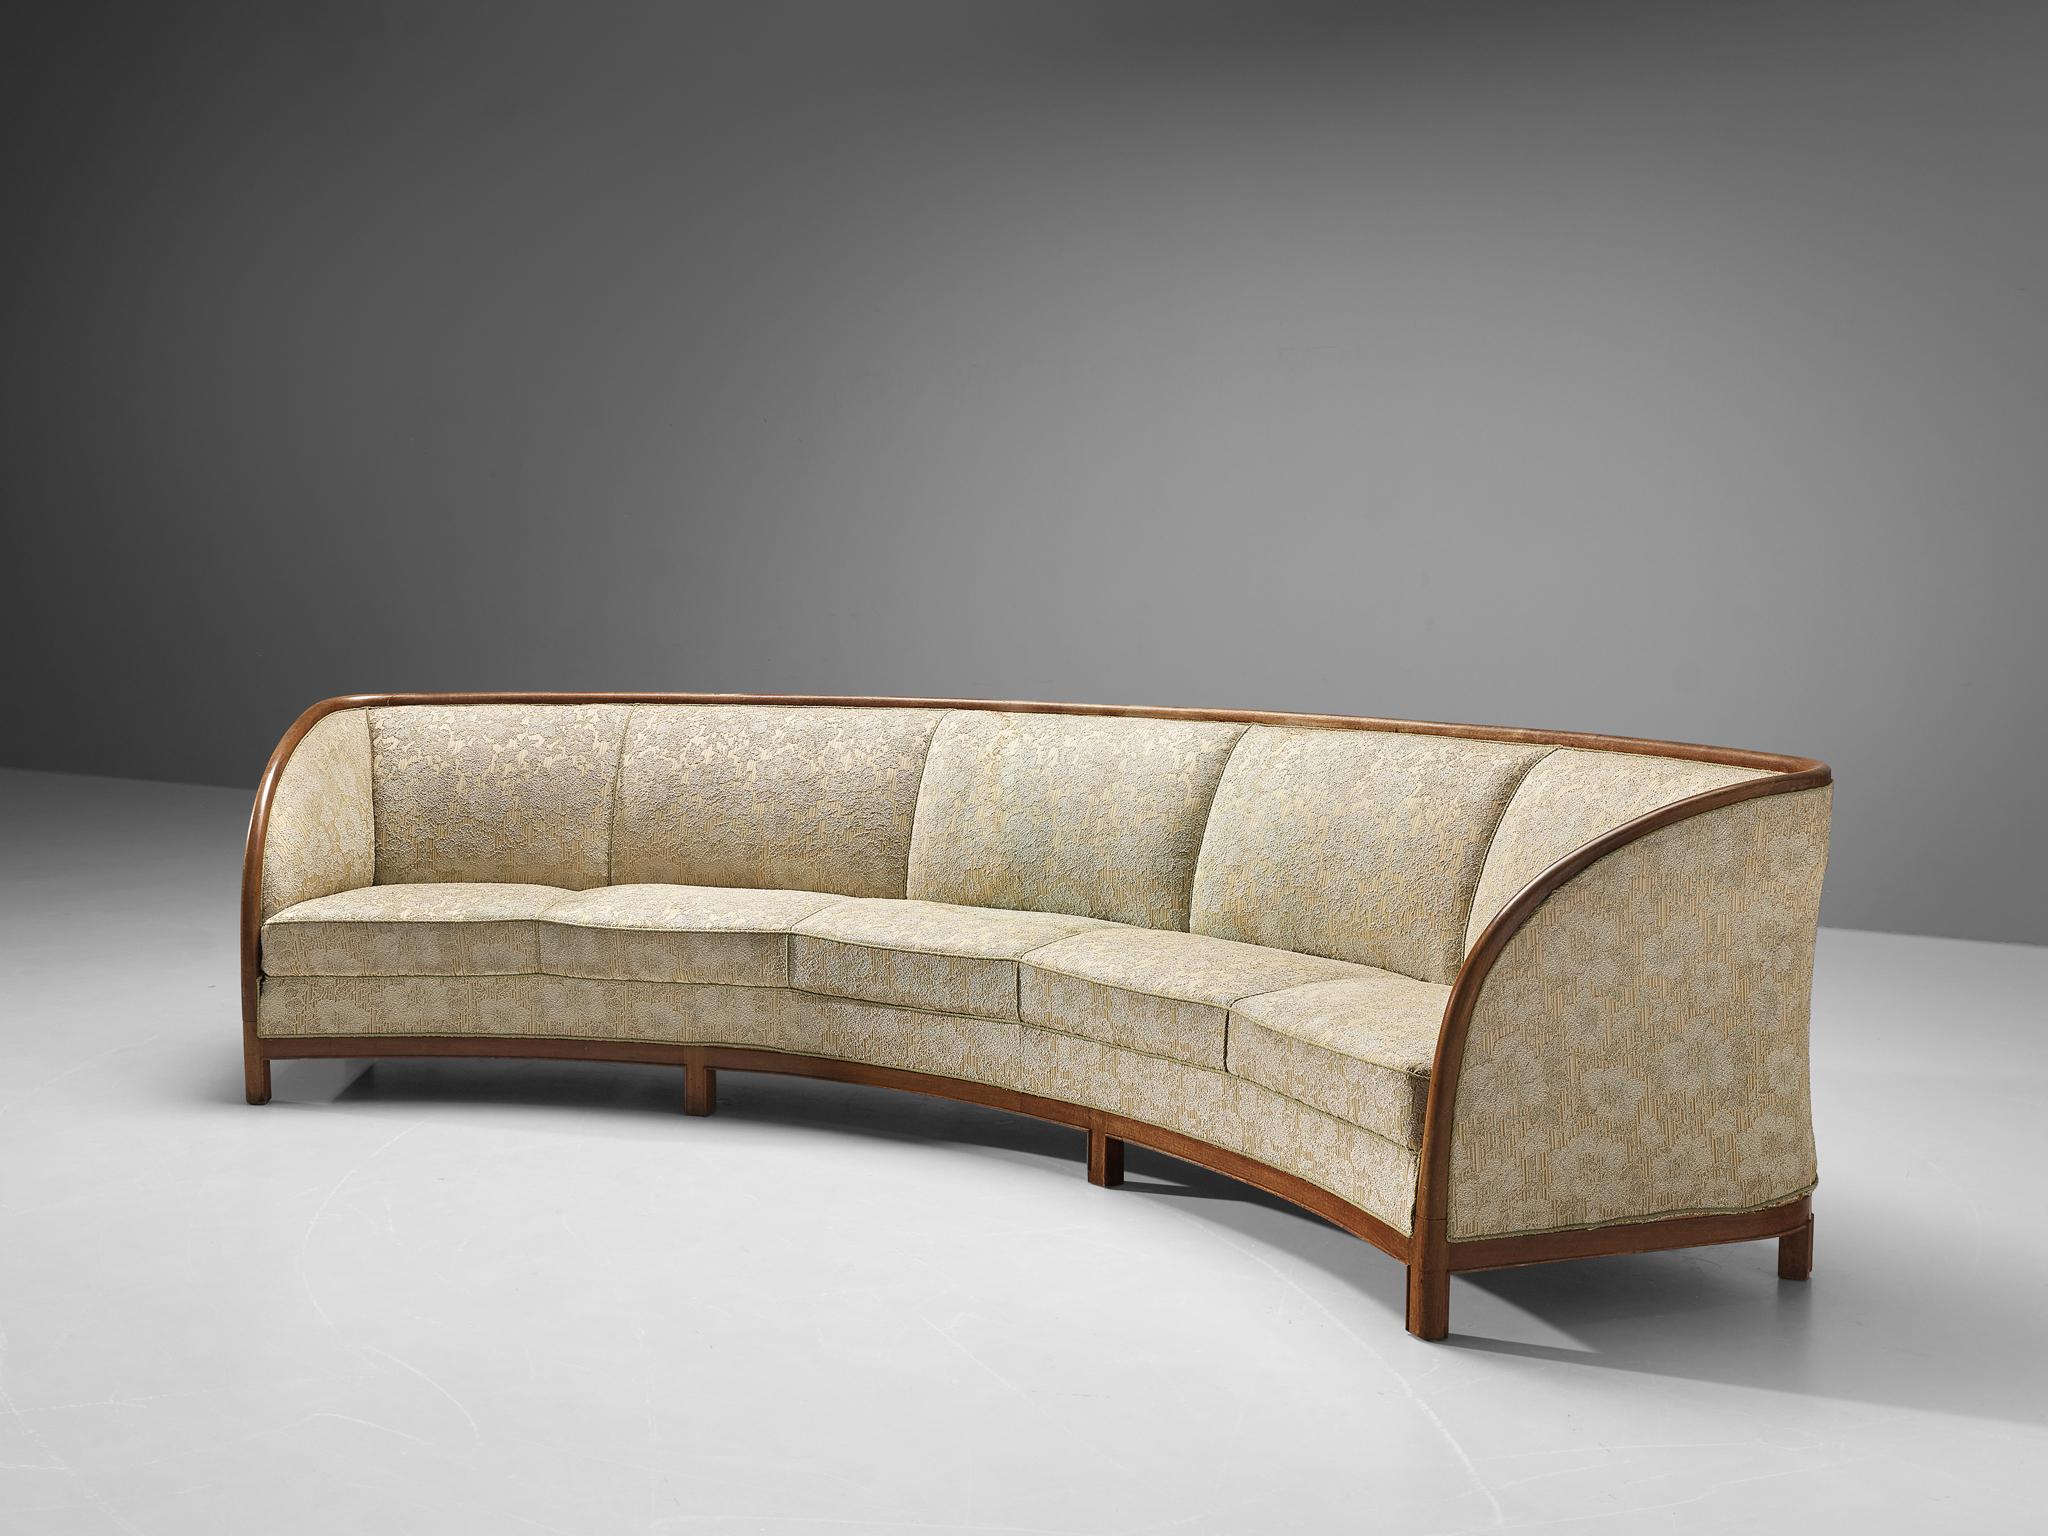 Canapé, tissu, bois, Danemark, années 1950

Un grand canapé d'origine danoise qui rayonne de sophistication et de simplicité discrète. La forme incurvée apportera du dynamisme à votre pièce. Les sièges sont recouverts d'un tissu à motifs floraux